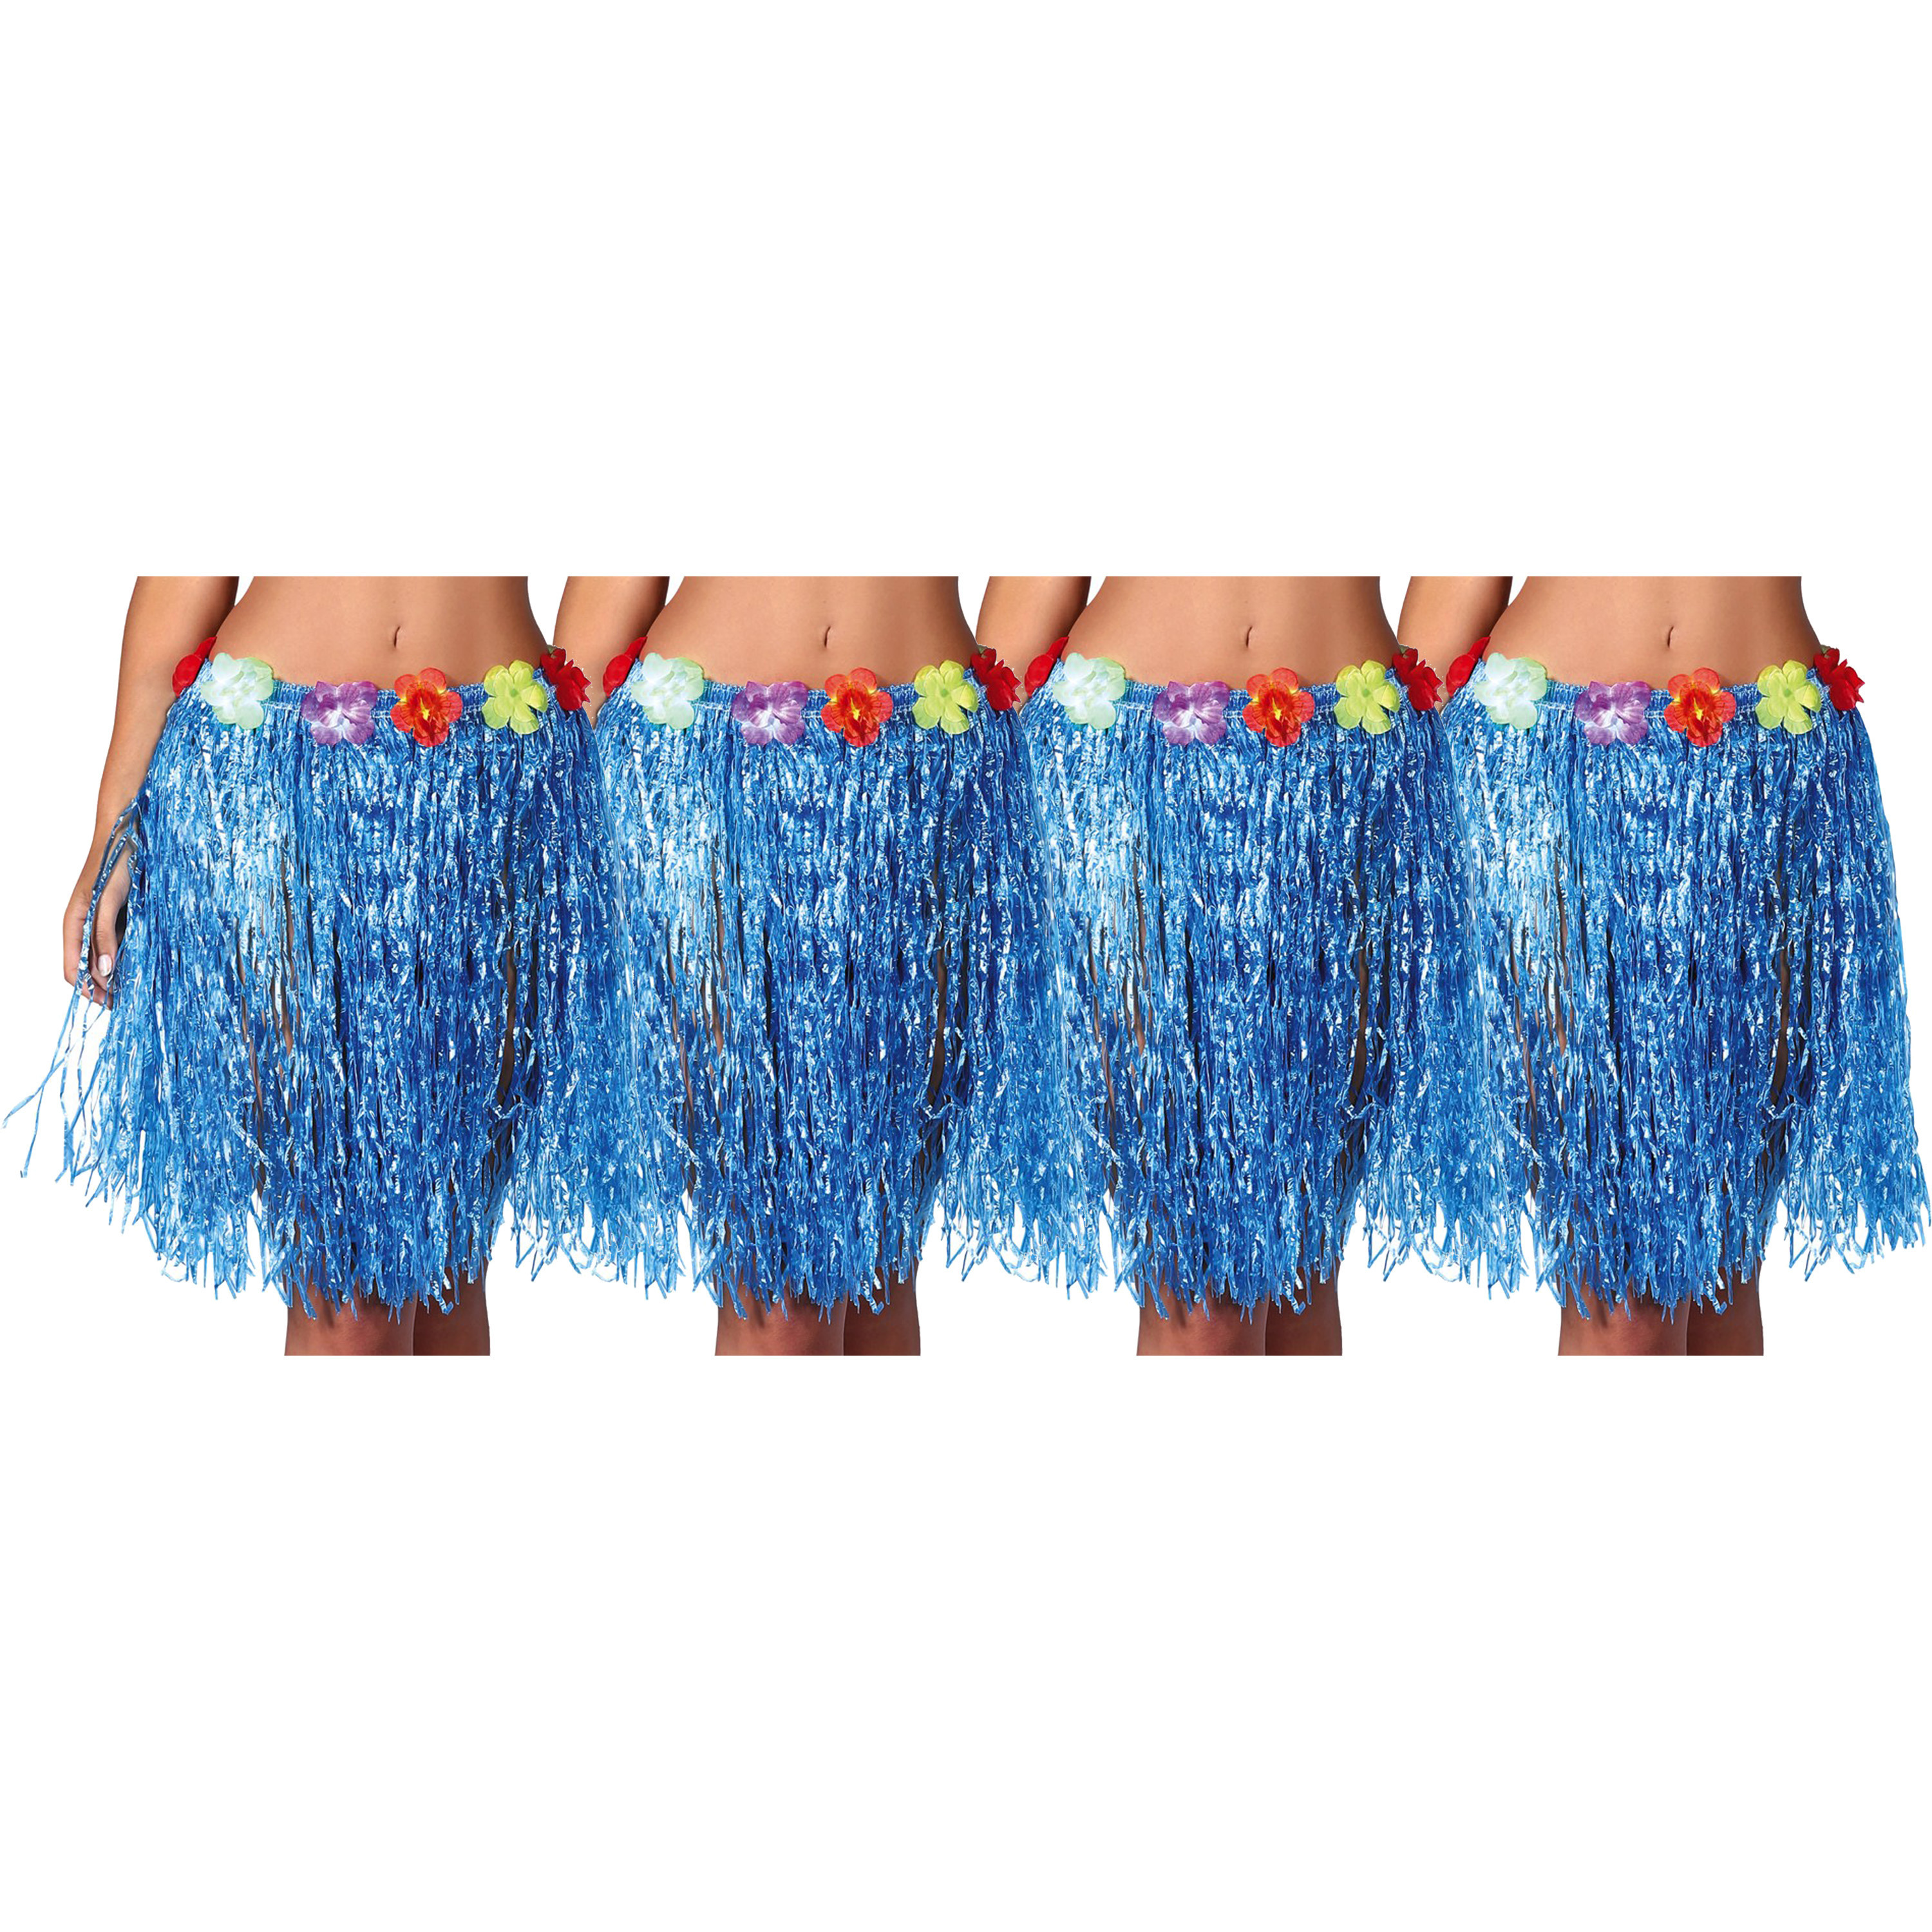 Hawaii verkleed rokje - 4x - voor volwassenen - blauw - 50 cm - rieten hoela rokje - tropisch Top Merken Winkel